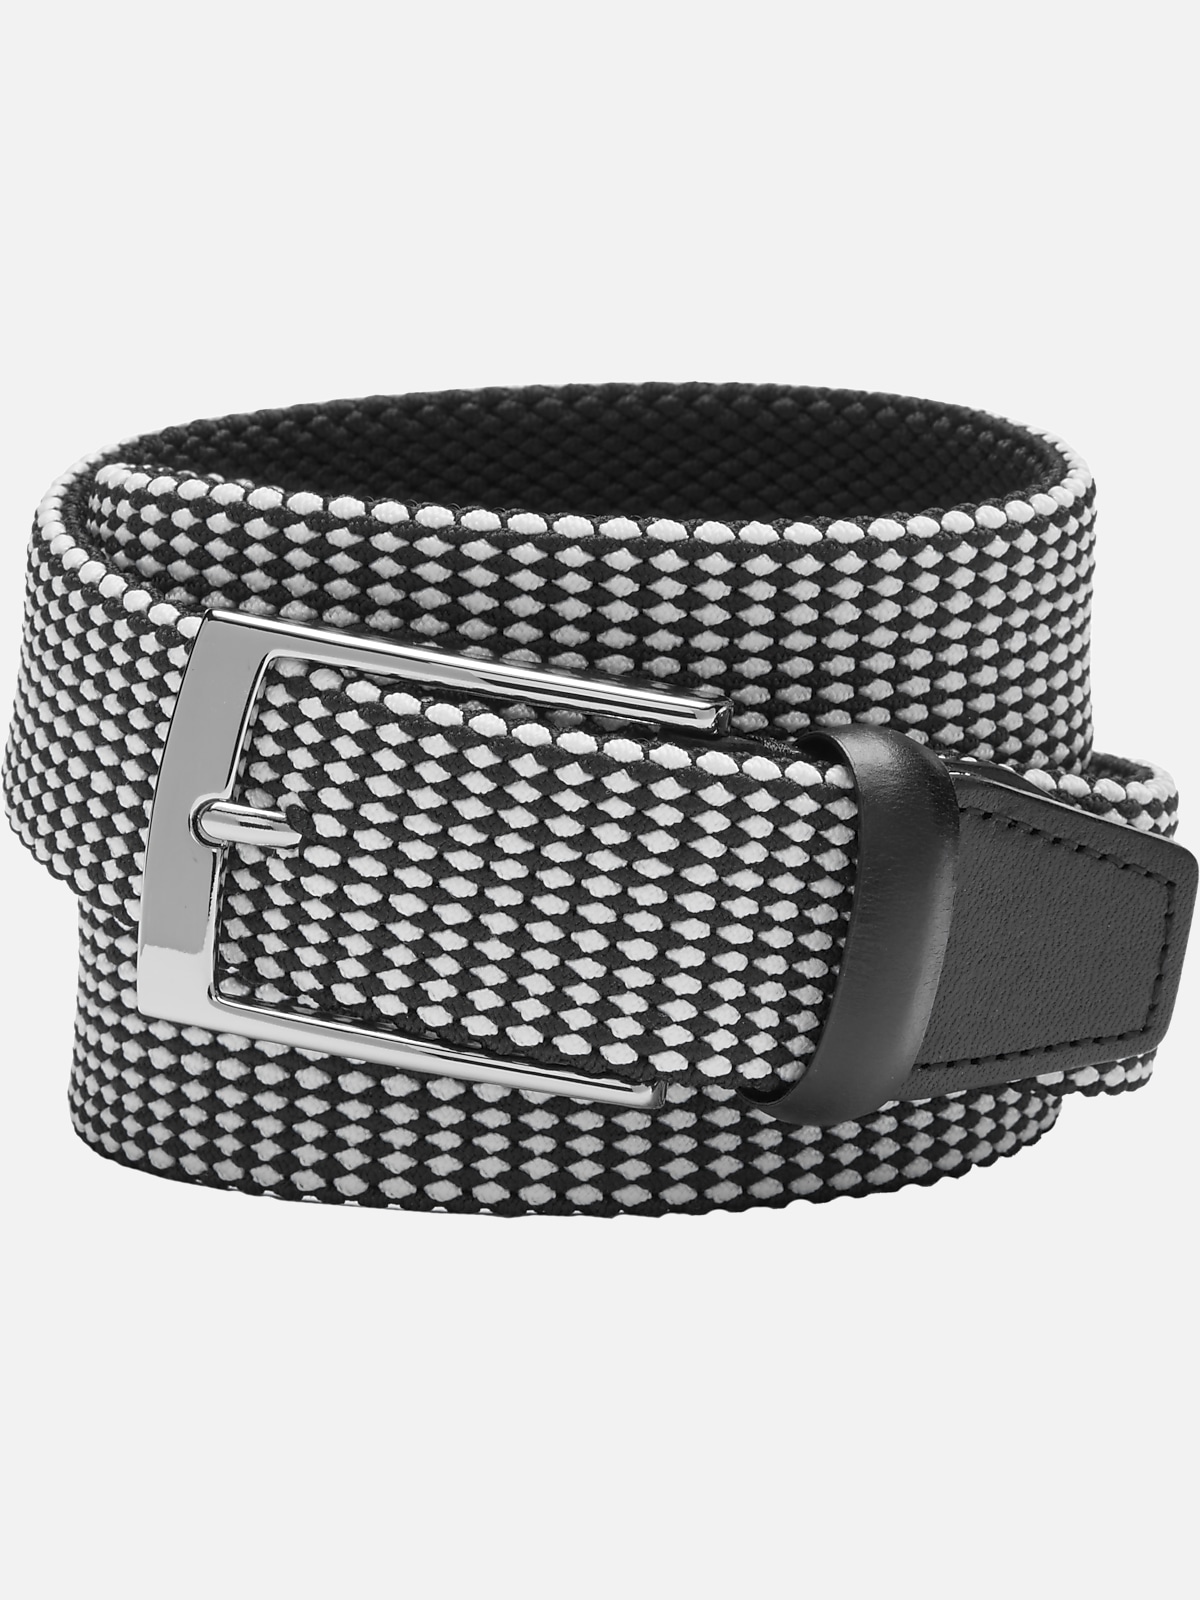 Joseph Abboud Woven Casual Belt | Belts & Suspenders| Men's Wearhouse